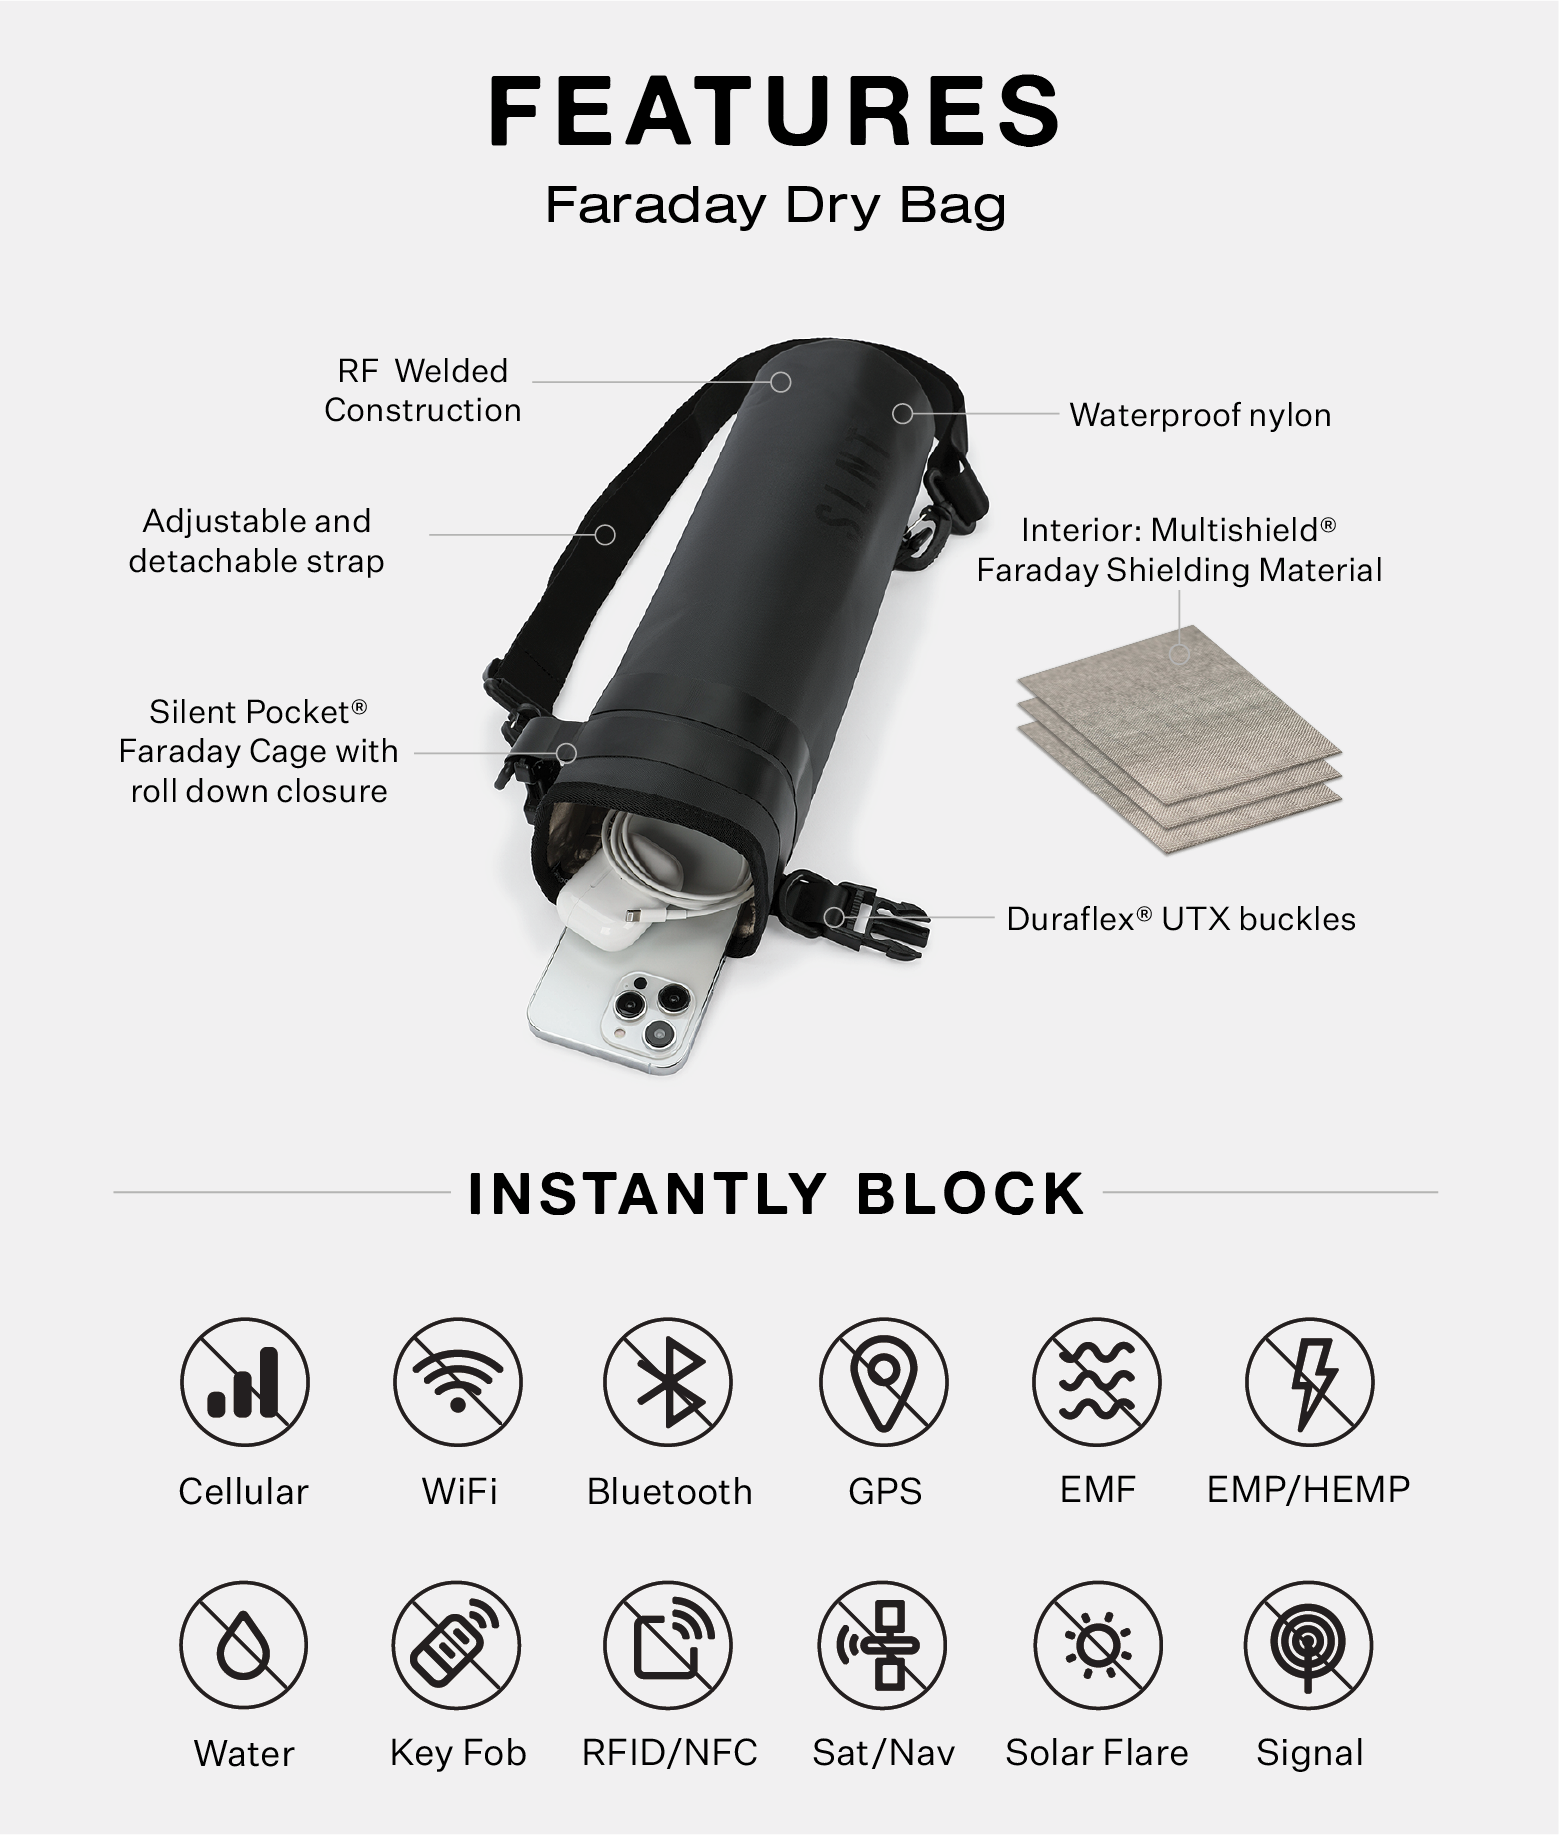 Faraday Dry Bags